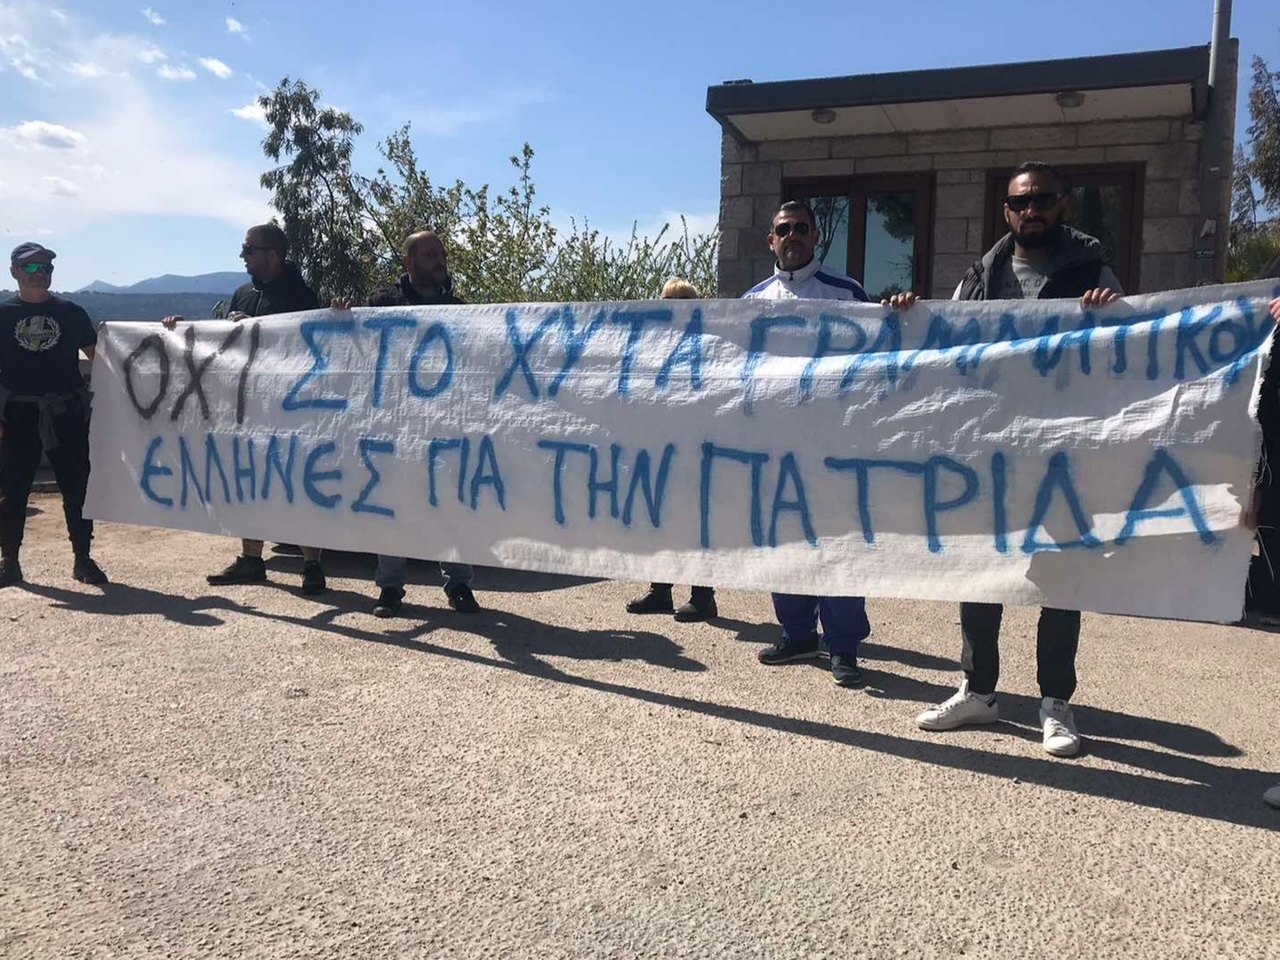 Ενημερωτική δράση στον Μαραθώνα και τη Νέα Μάκρη από τους «Έλληνες για την Πατρίδα»